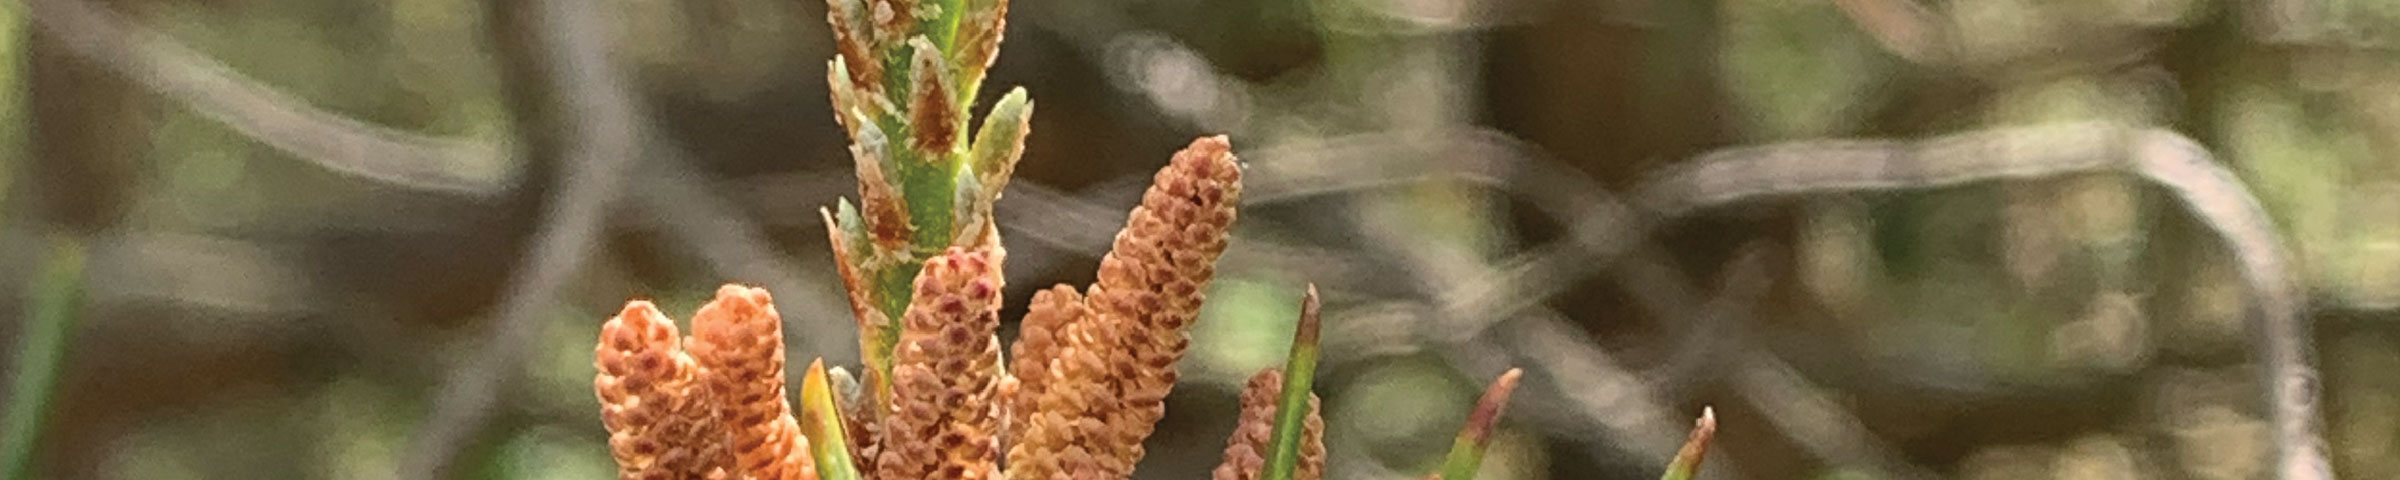 Wild Pine Pollen in Vermont